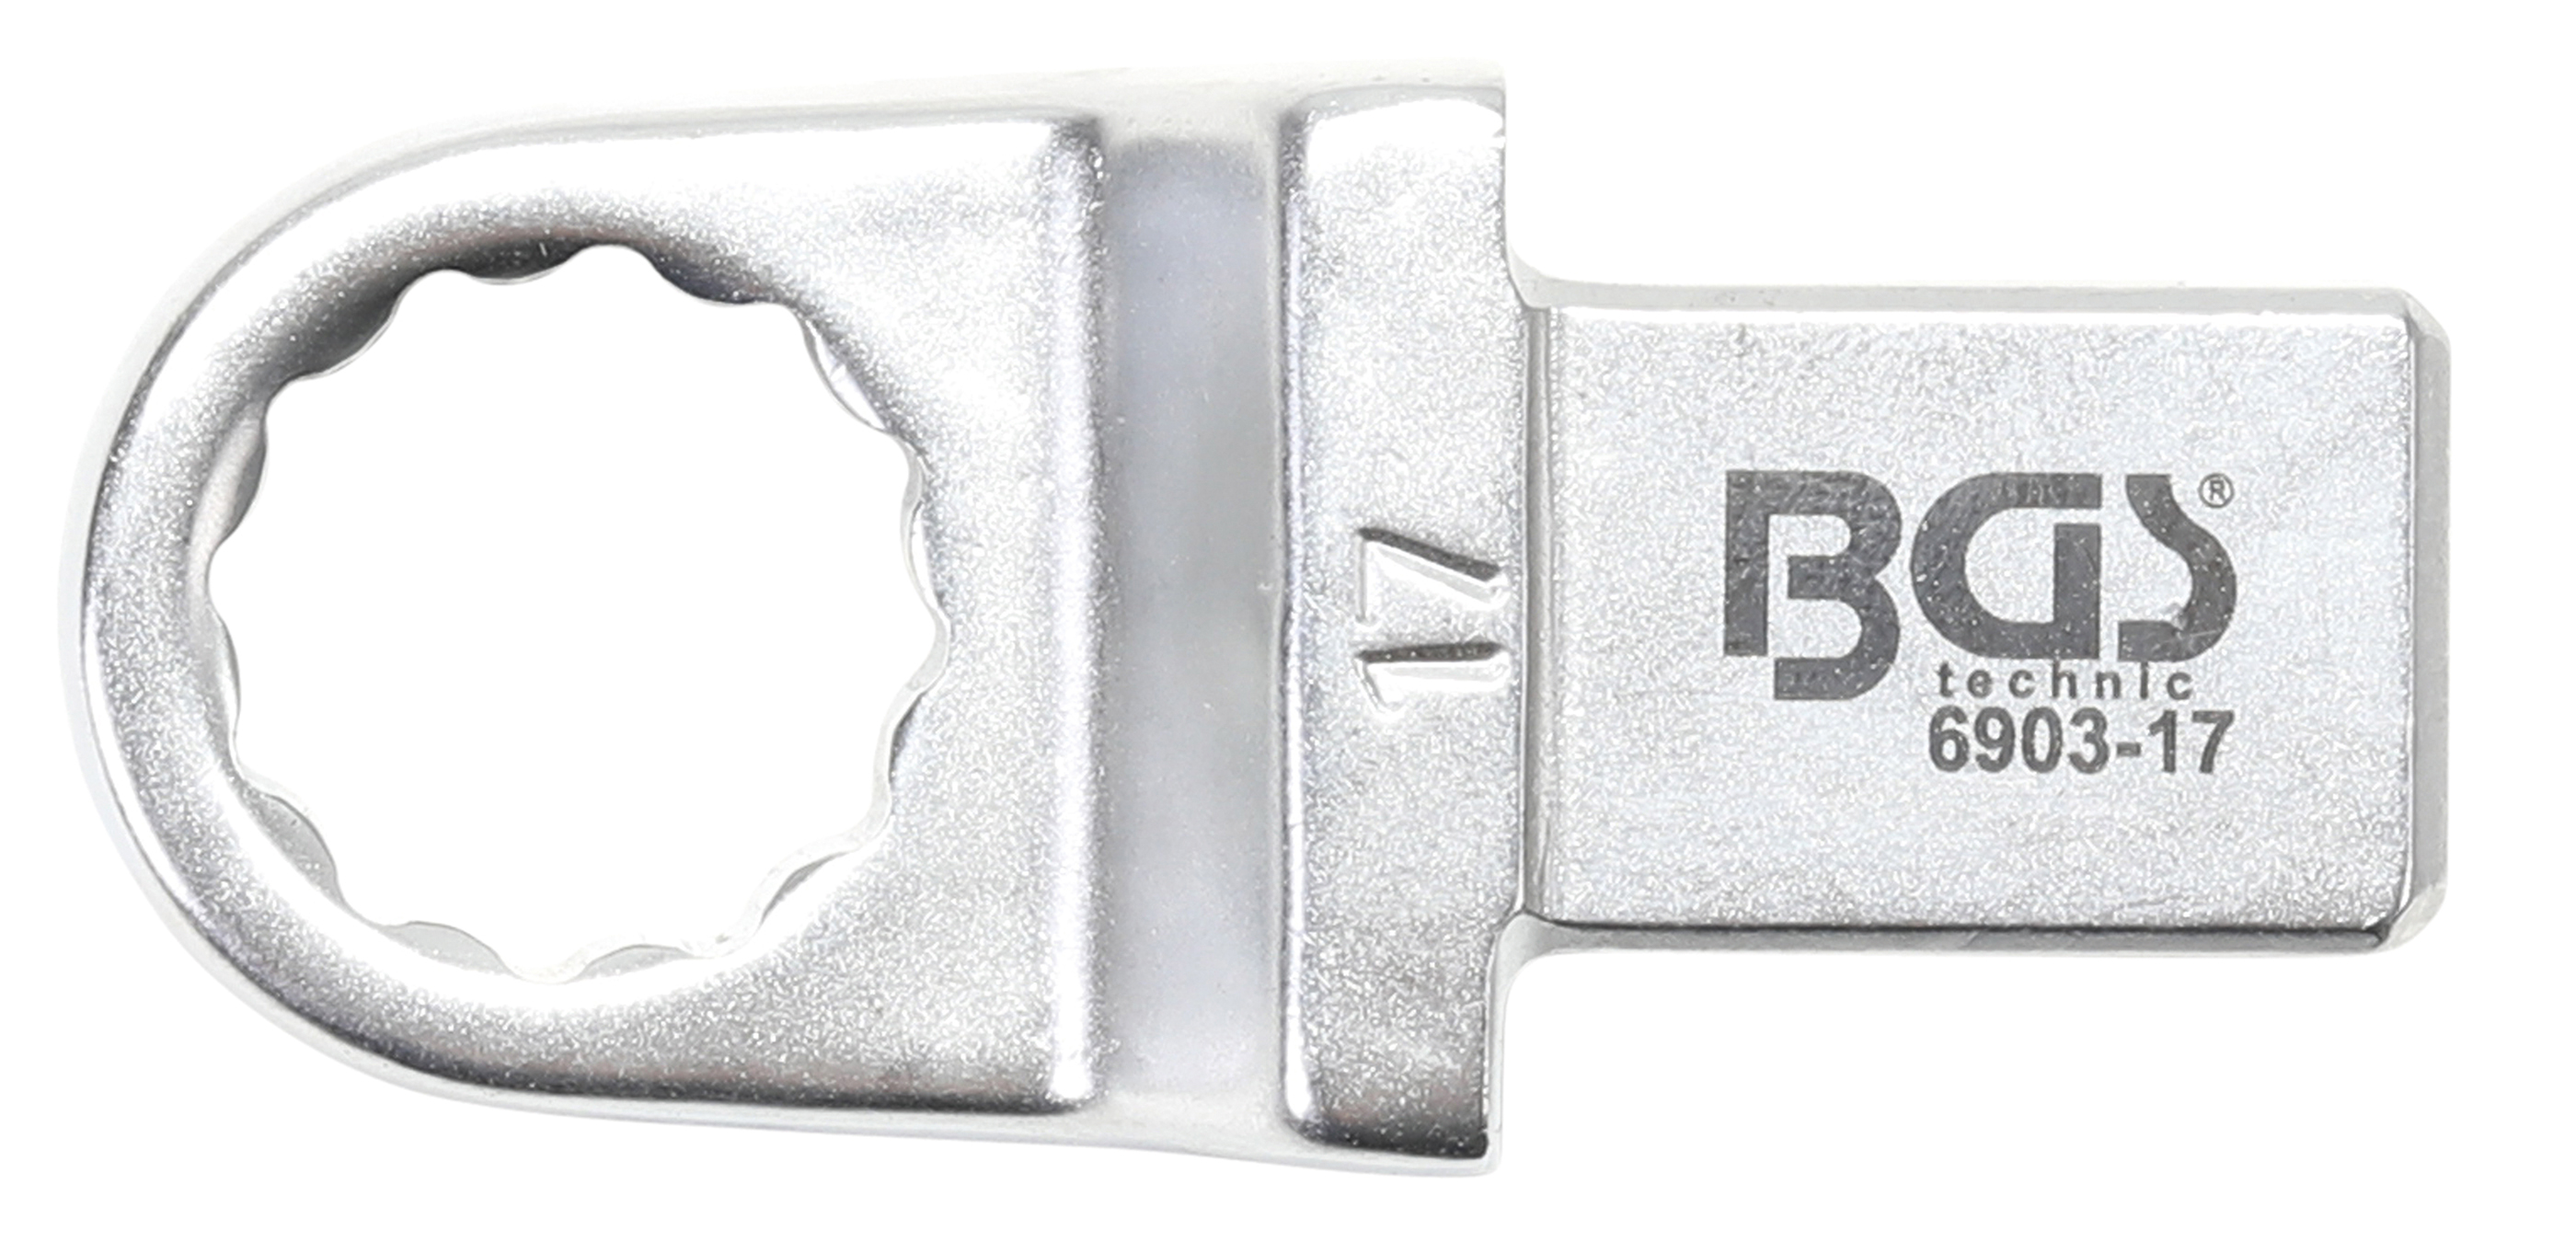 BGS Einsteck-Ringschlüssel | 17 mm | Aufnahme 14 x 18 mm